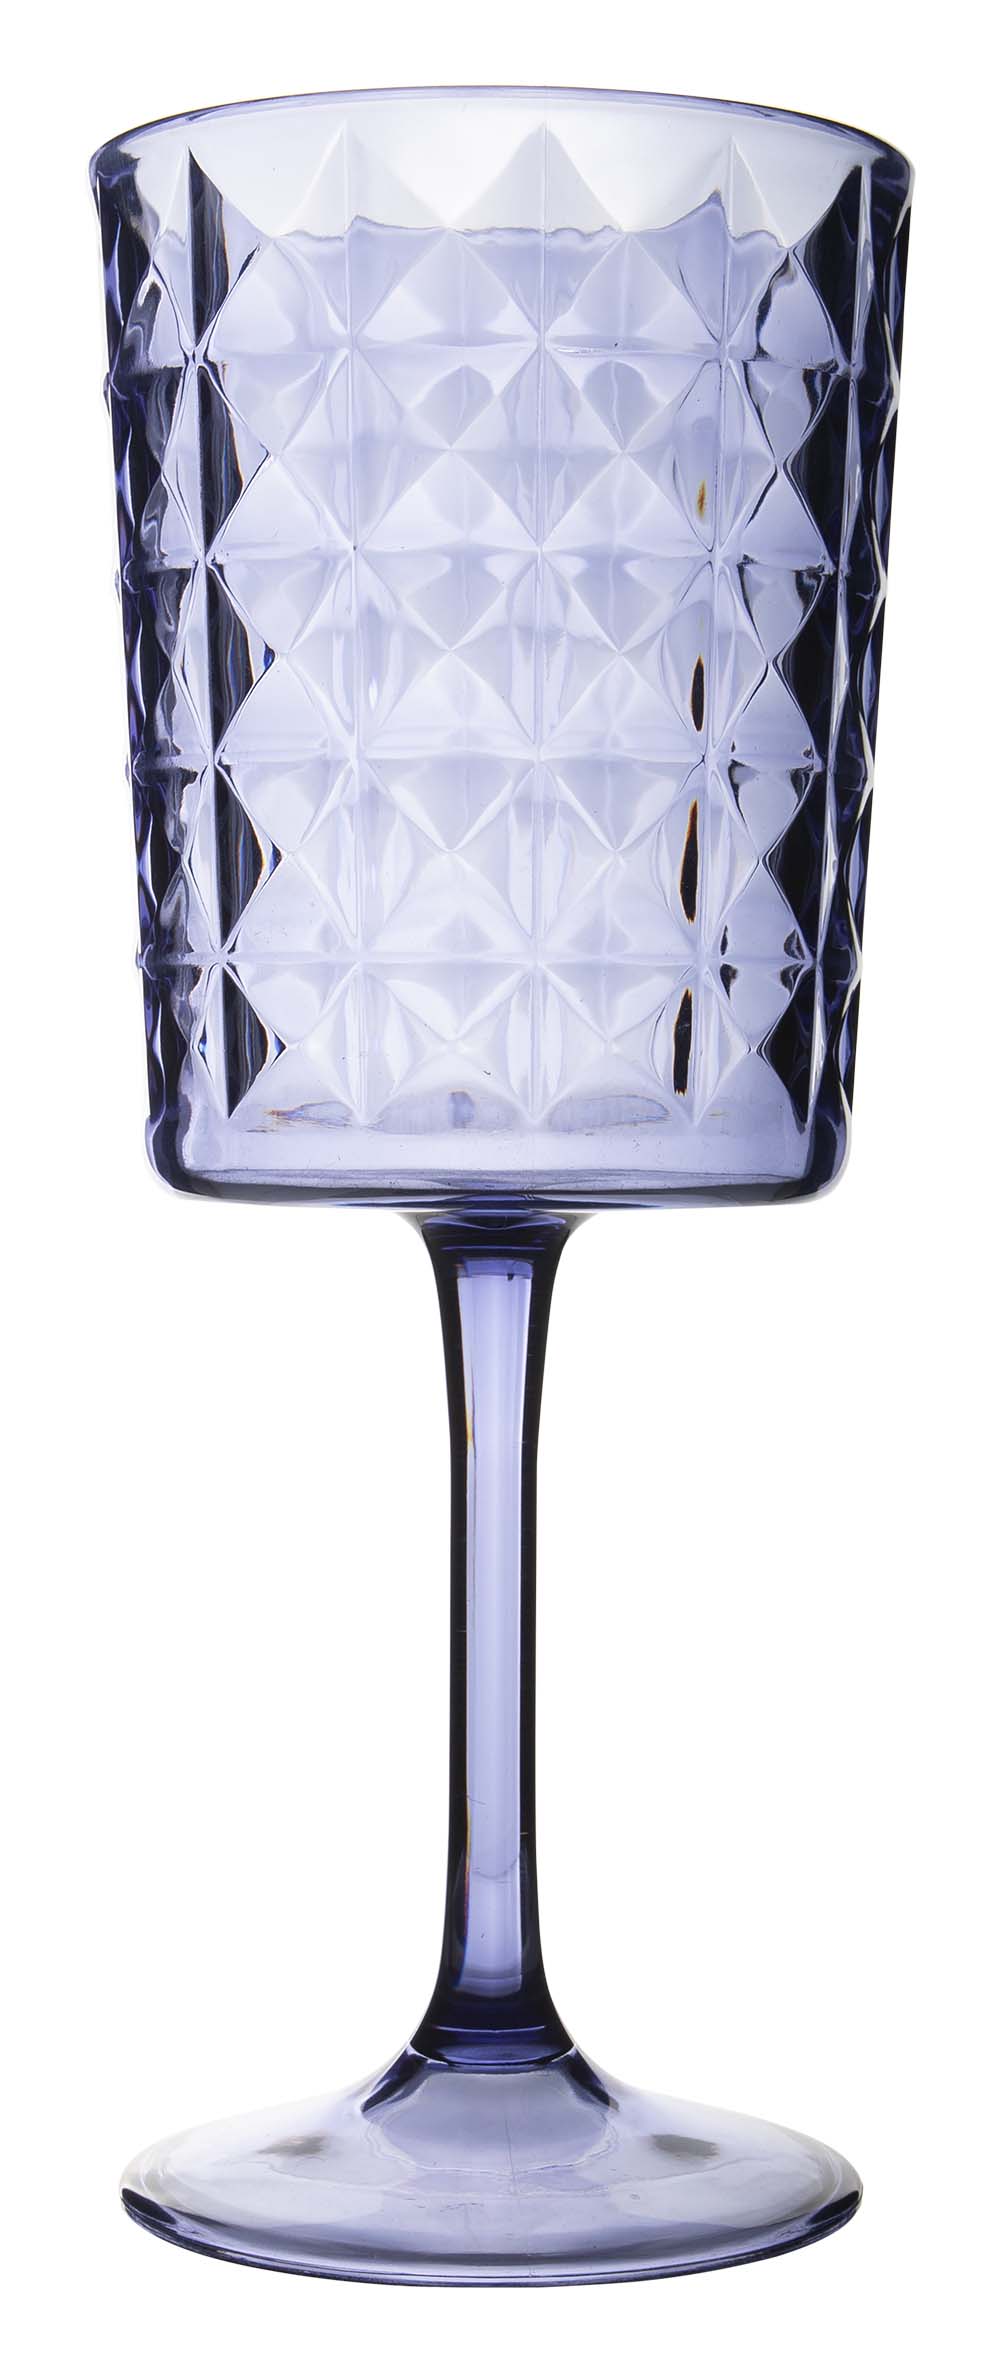 6967952 Een stijlvol donkerblauw wijnglas uit de Stone line collectie. Vrijwel onbreekbaar door hoogwaardig SAN materiaal. Zeer gemakkelijk te reinigen en langdurig te gebruiken, wat het glas erg duurzaam maakt. Daarnaast is het wijnglas erg lichtgewicht en krasbestendig. Inhoud: 400 ml.